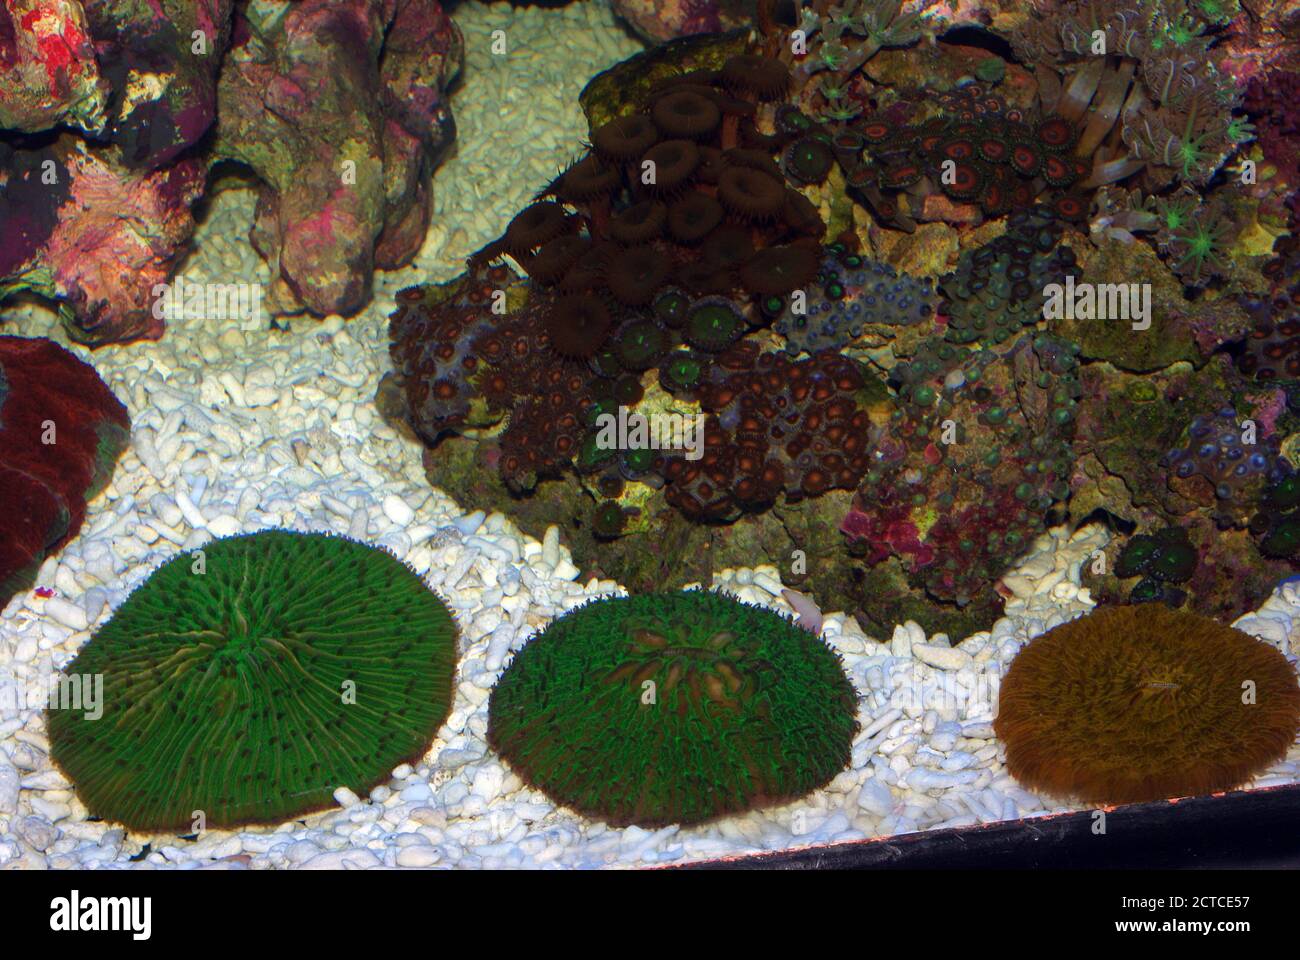 Mushroom stony coral, Fungia sp. Stock Photo